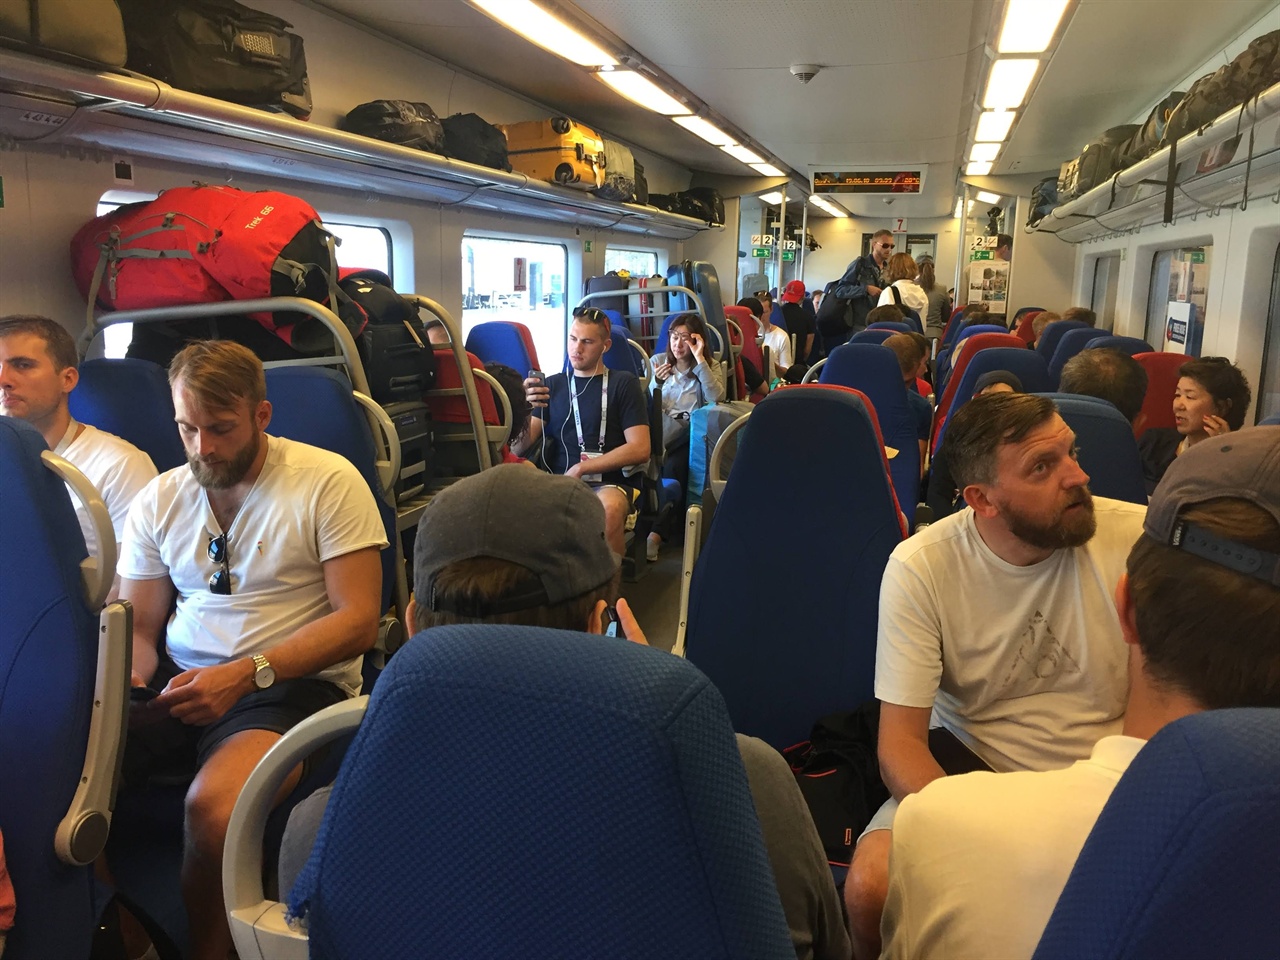 야간 열차가 아닌 무료 열차는 나름 우리 고속열차의 느낌도 있고, 편안하네요! 스웨덴 청년들의 소란안에서 한국 유니폼으로 앉아있었더니, 뒷통수가 따금거리긴 하네요. 